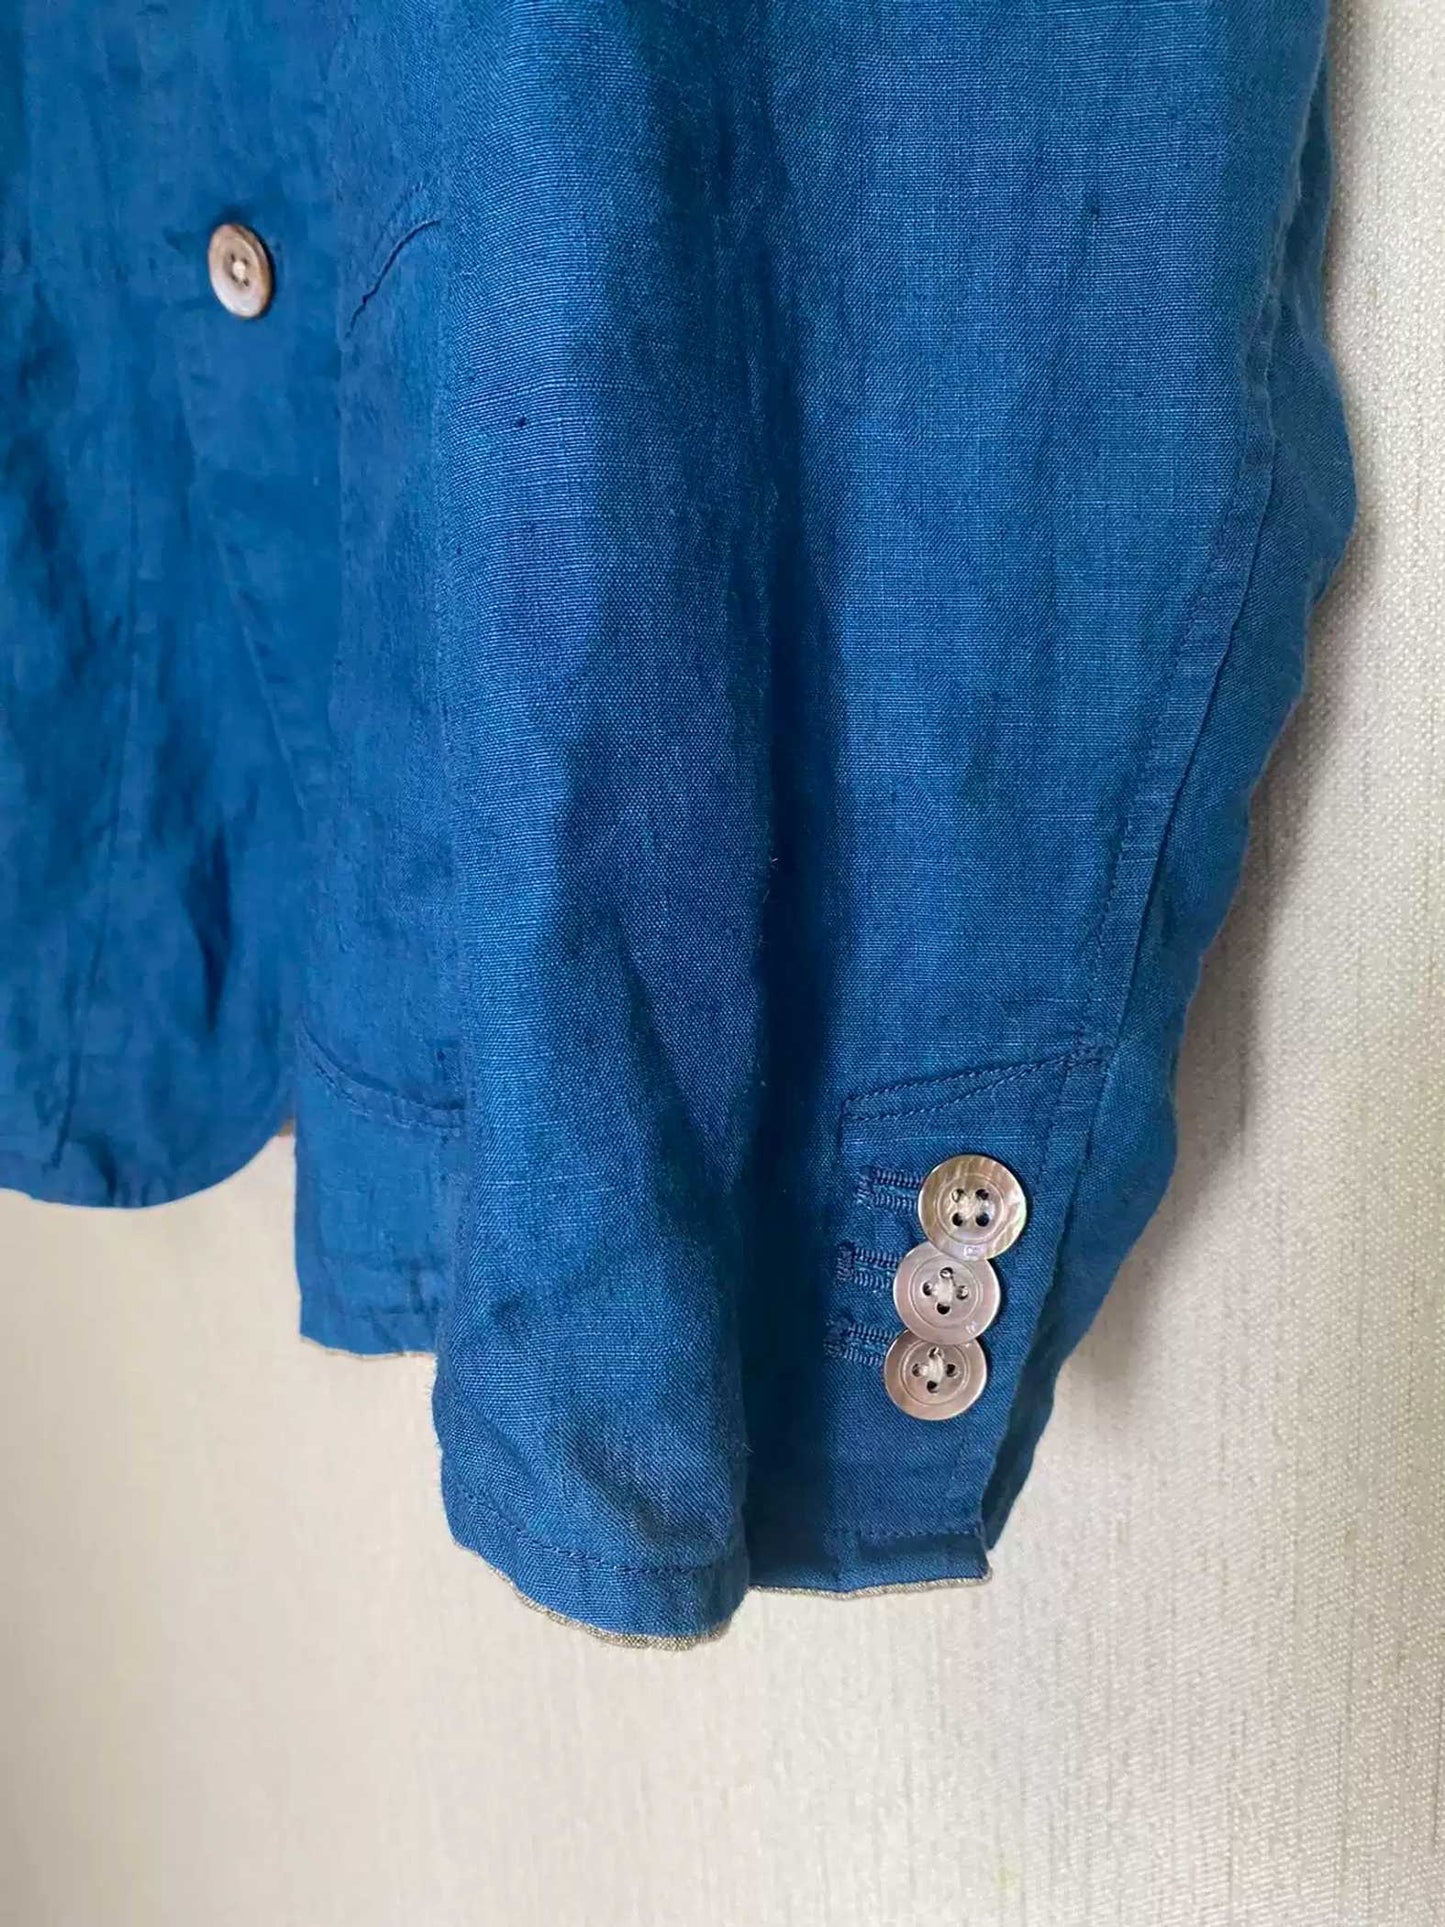 45RPM Blue Dye Pocket Shirt